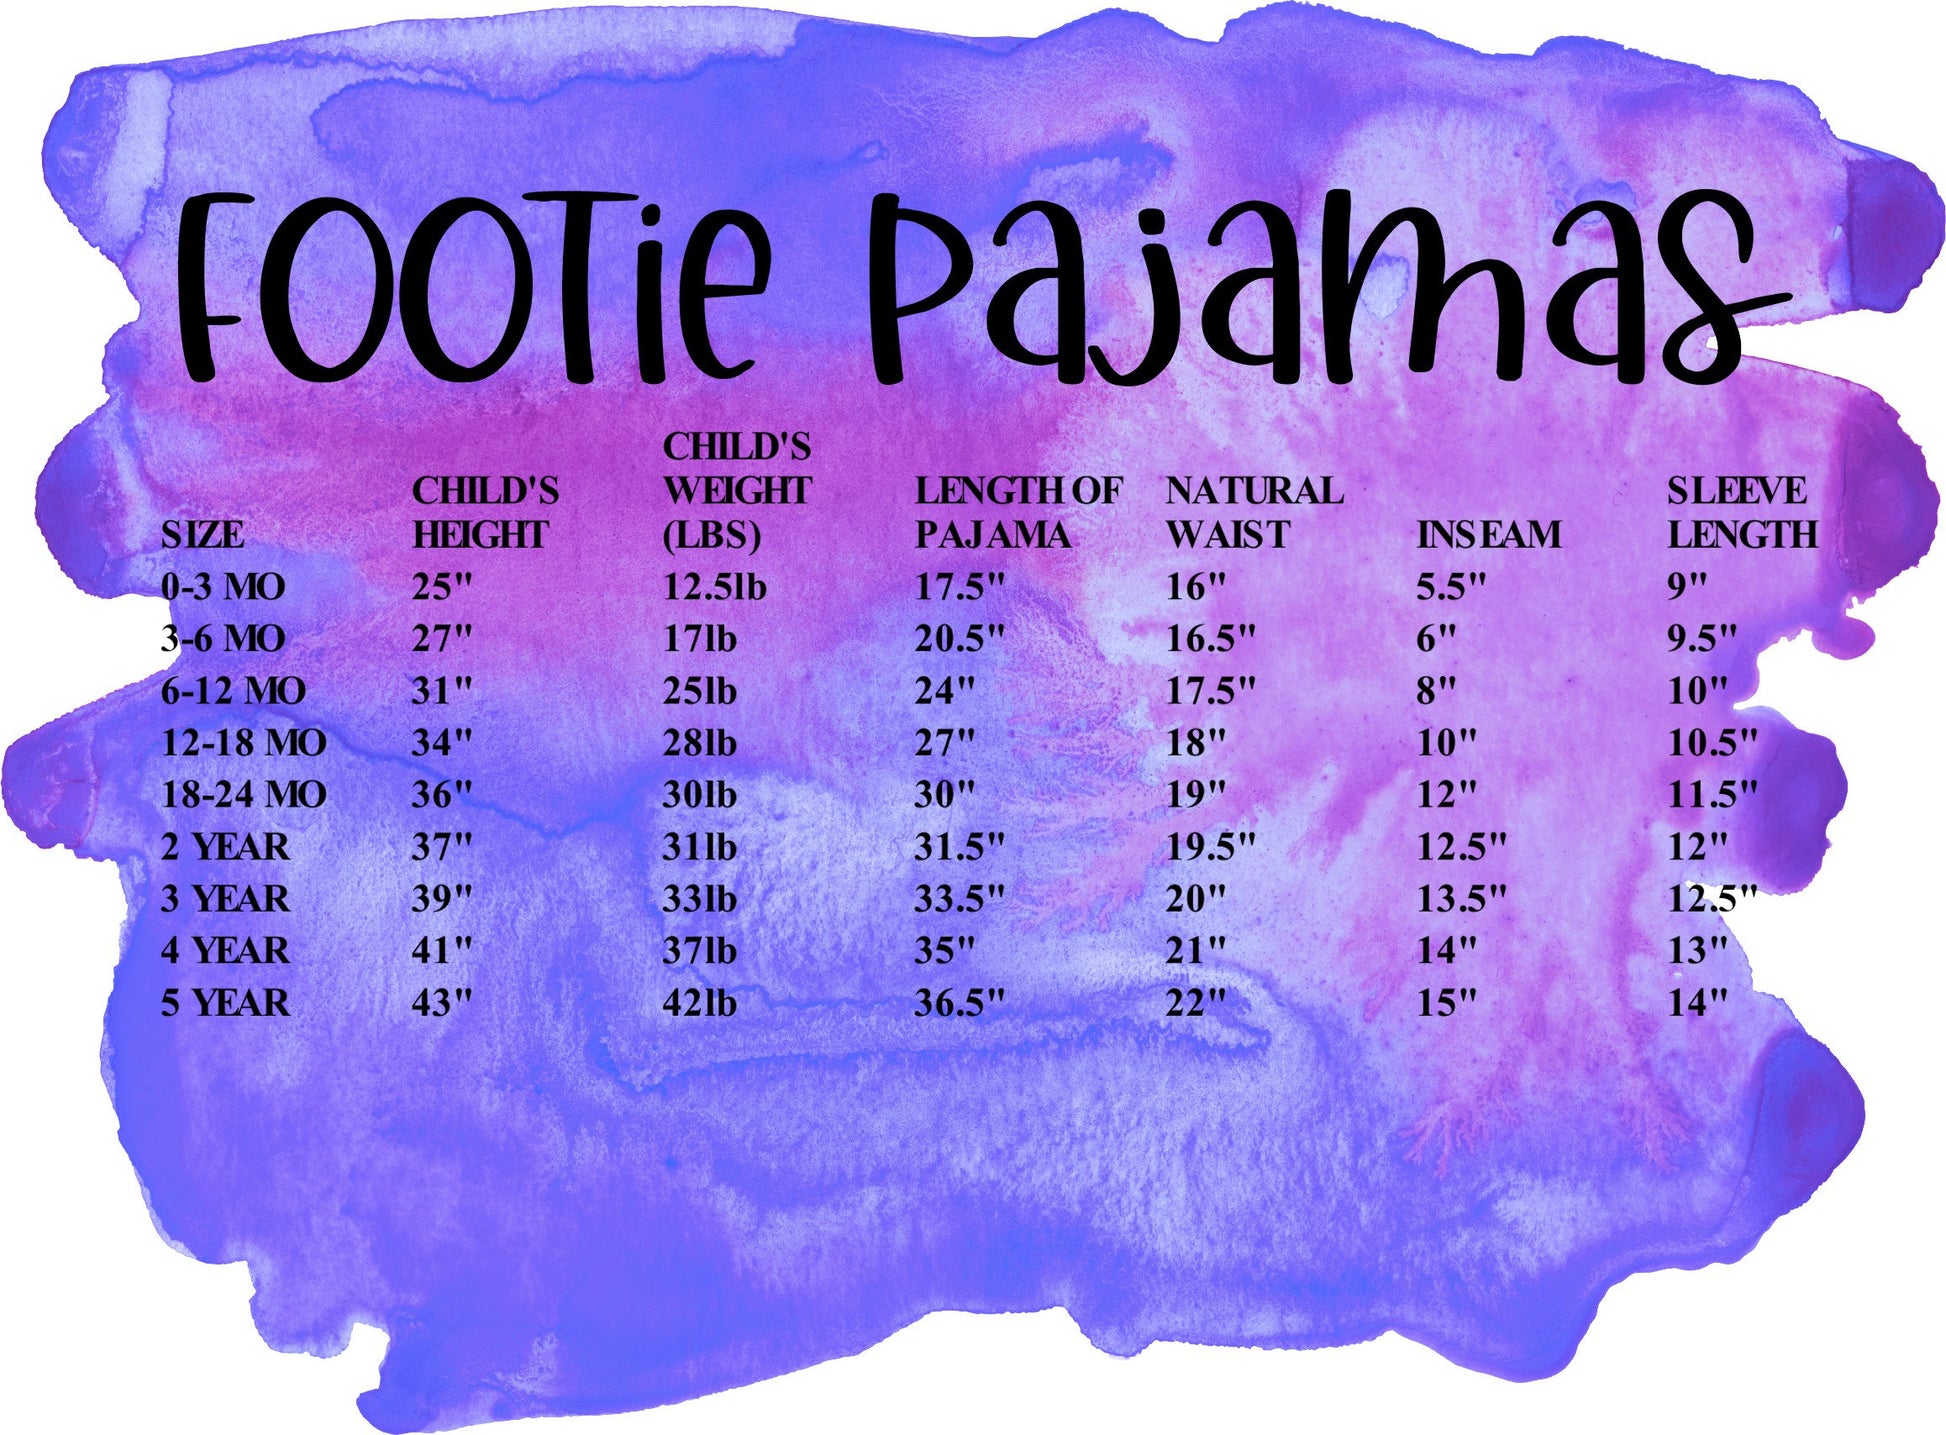 Personalized Purple Pajamas, mommy and me pjs, sleepover pajamas, dog pajamas, family pajamas, mother's day pajamas